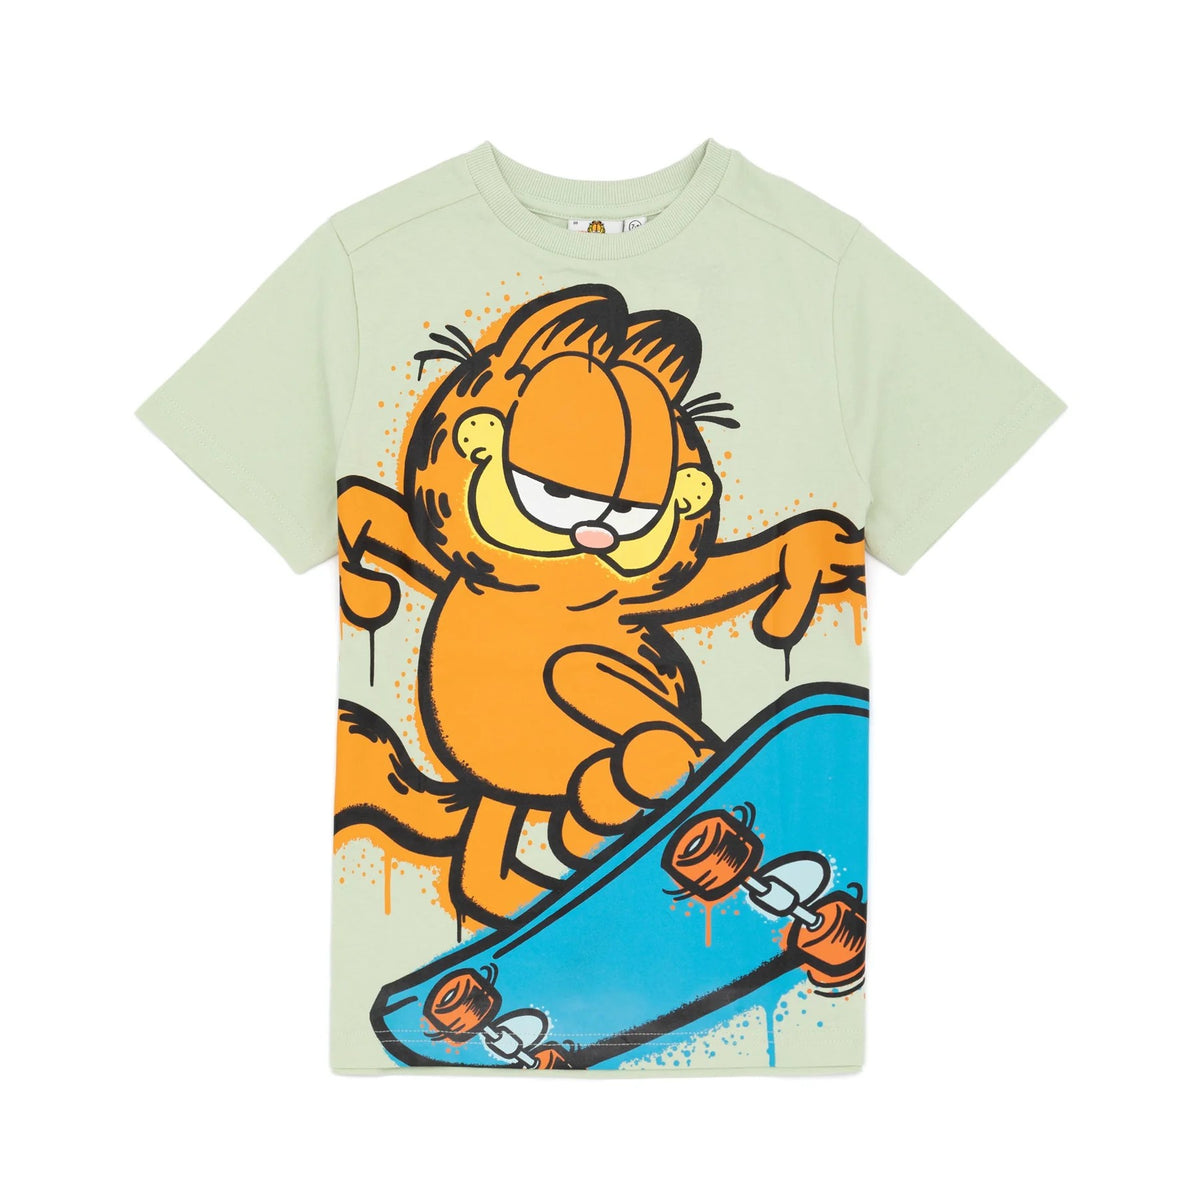 Garfield Childrens/Kids Skateboard T-Shirt | Discounts on great Brands